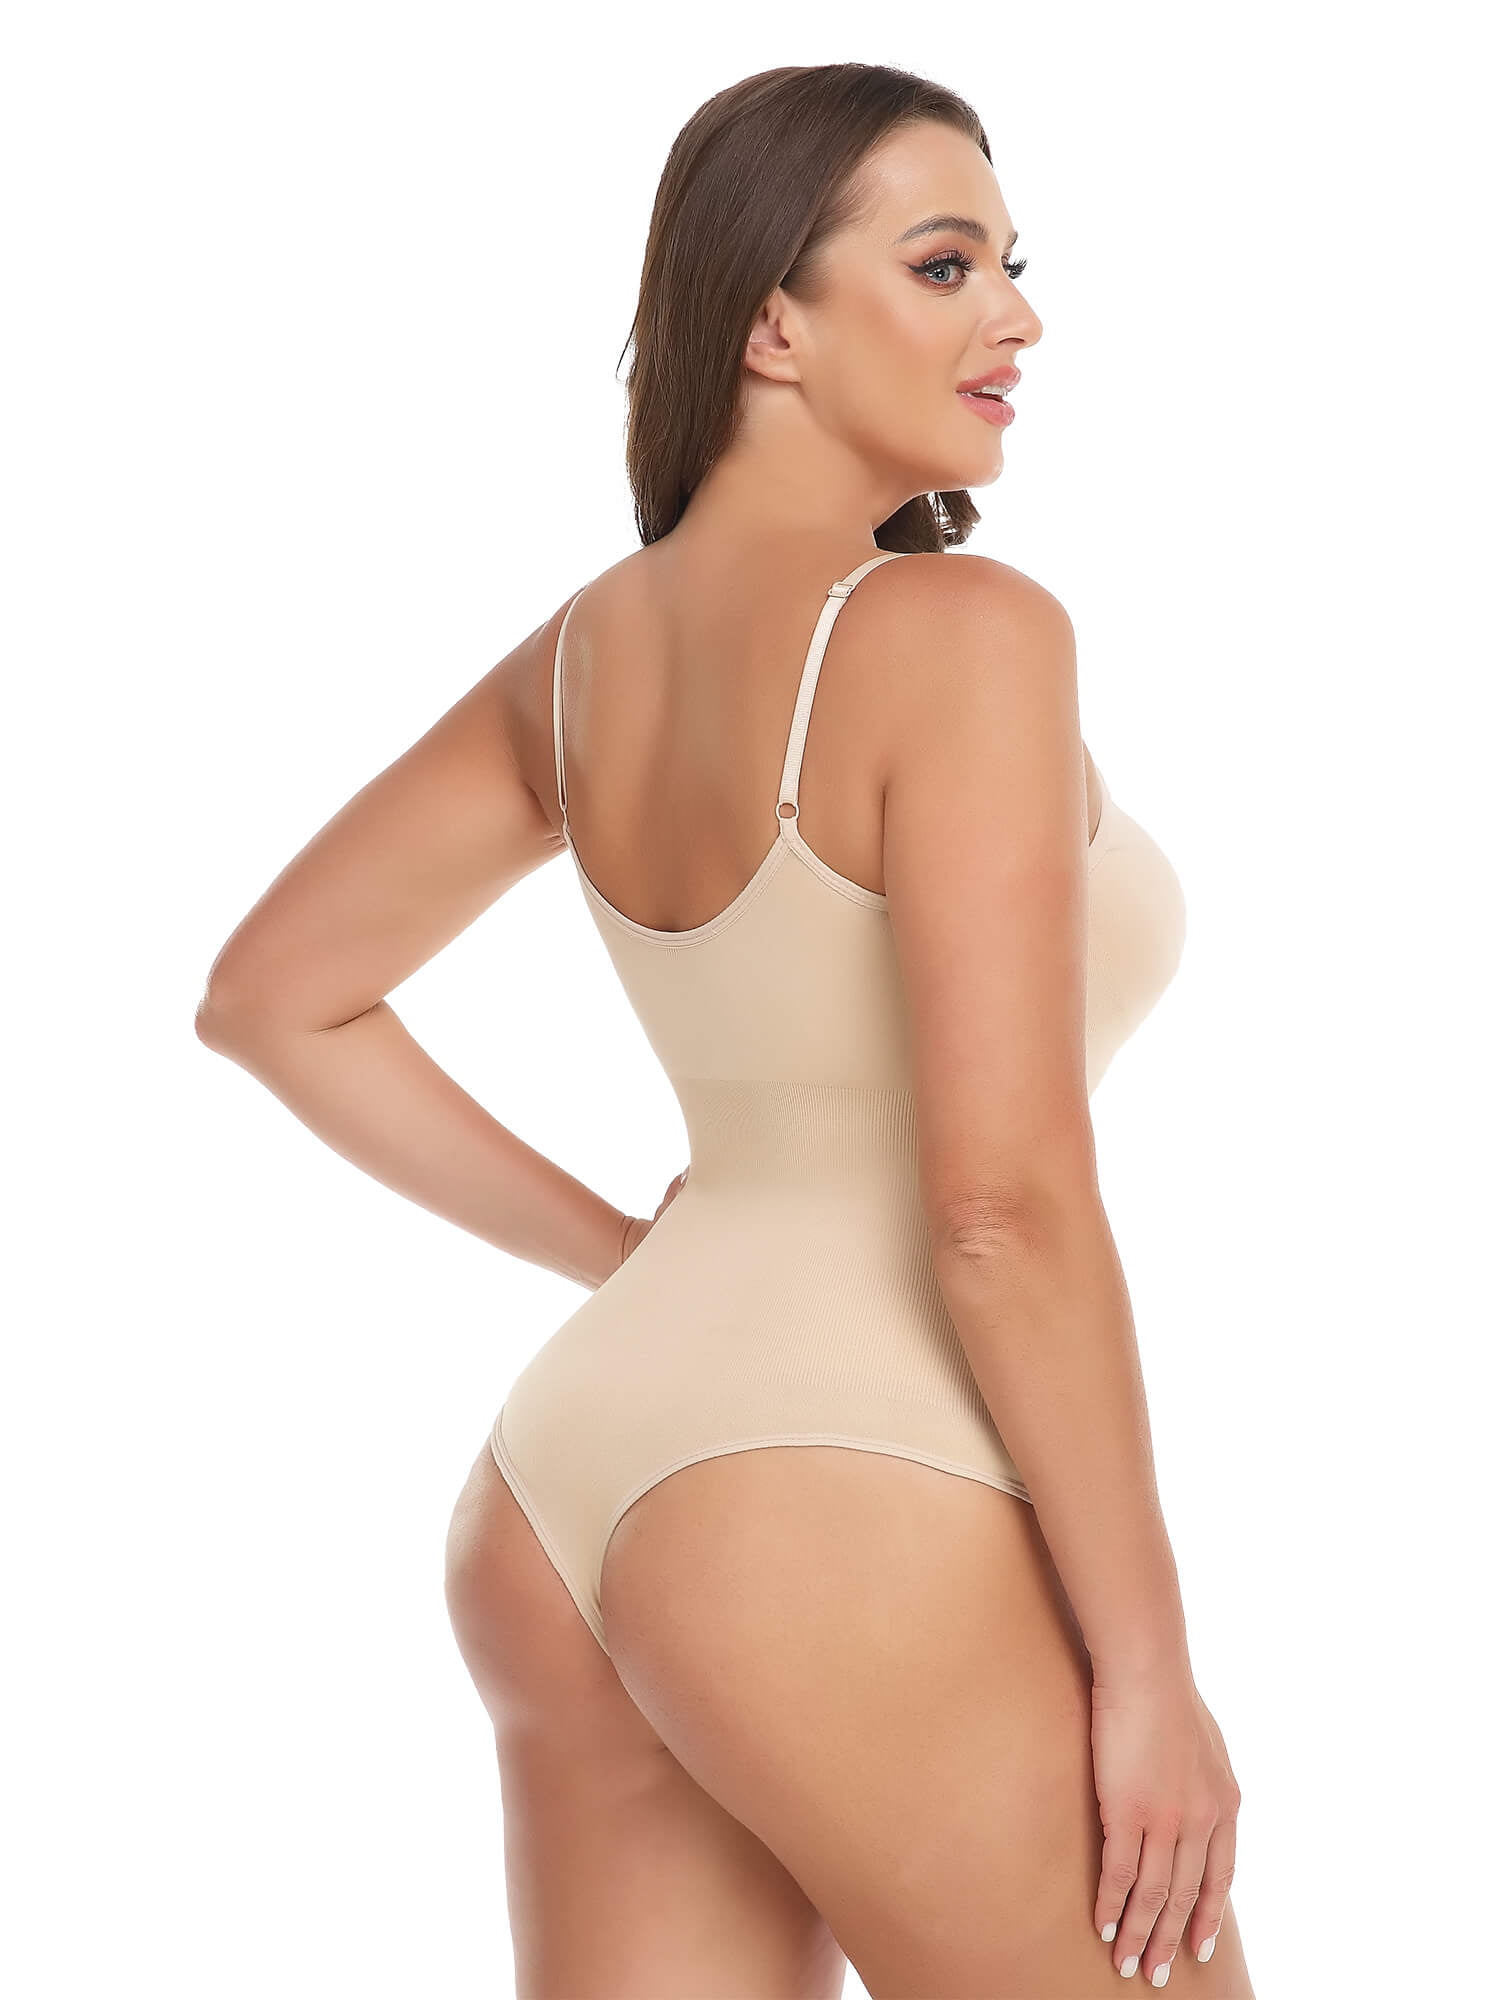 SENDKEEL Low Back Bodysuit For Women Shapewear Seamless Sculpting Body  Shaper Thong Tank Top